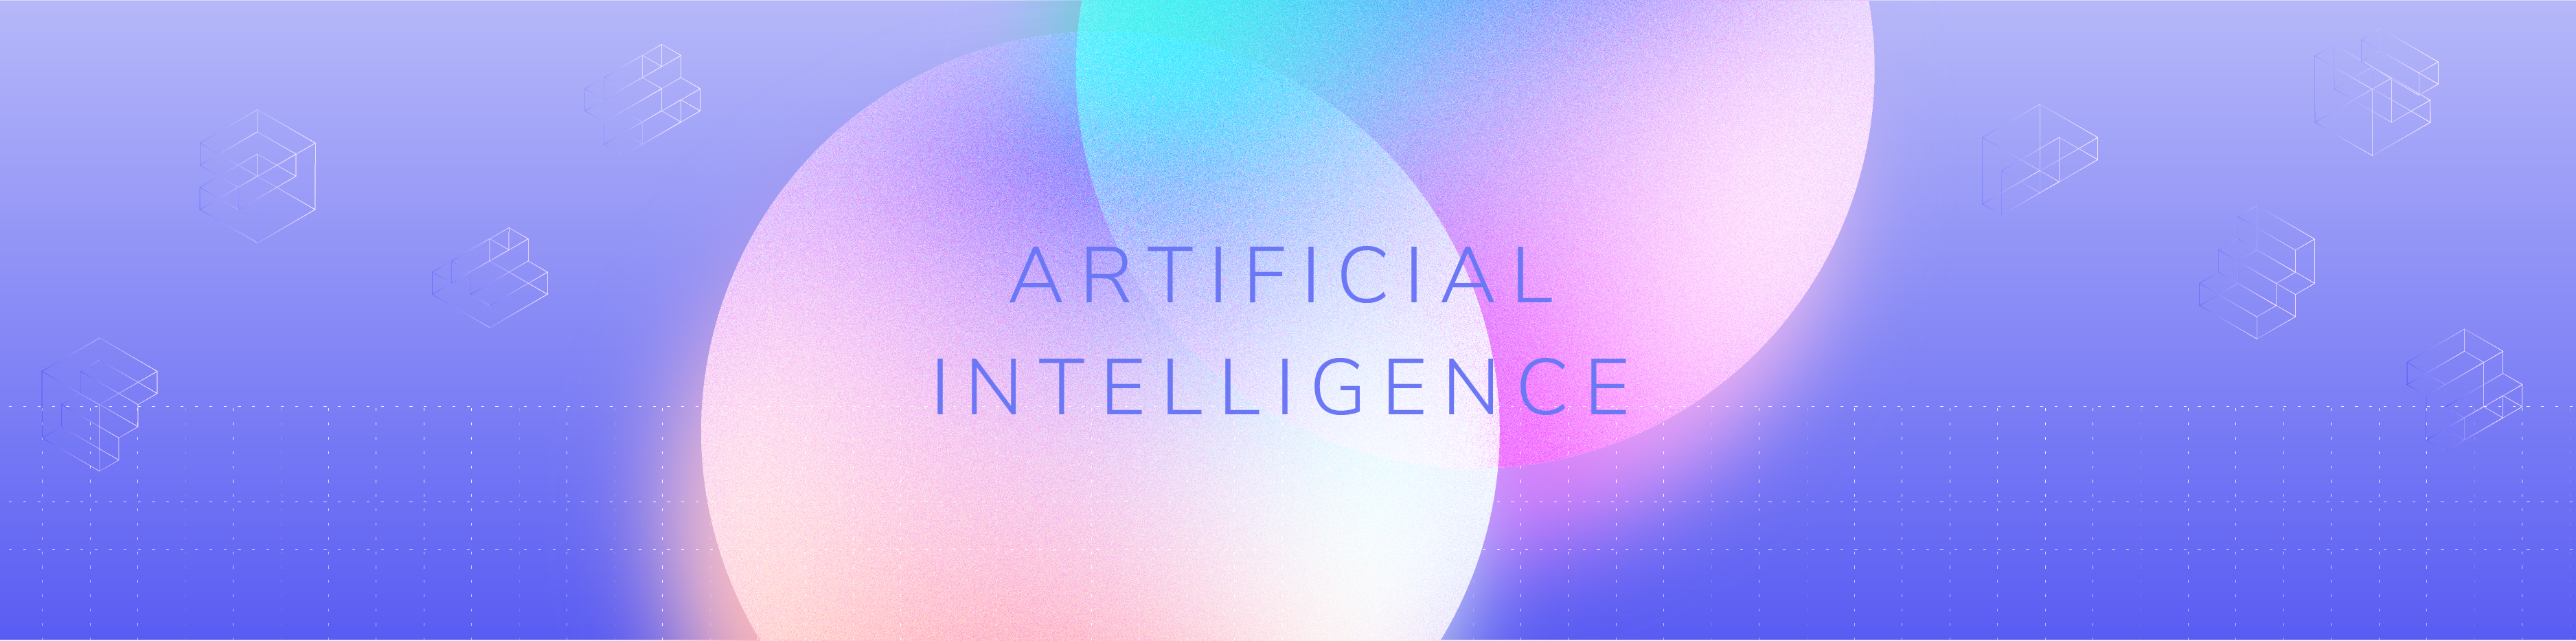 Afbeelding met paarse achtergrond, twee schijven en de woorden ‘Artificial Intelligence’